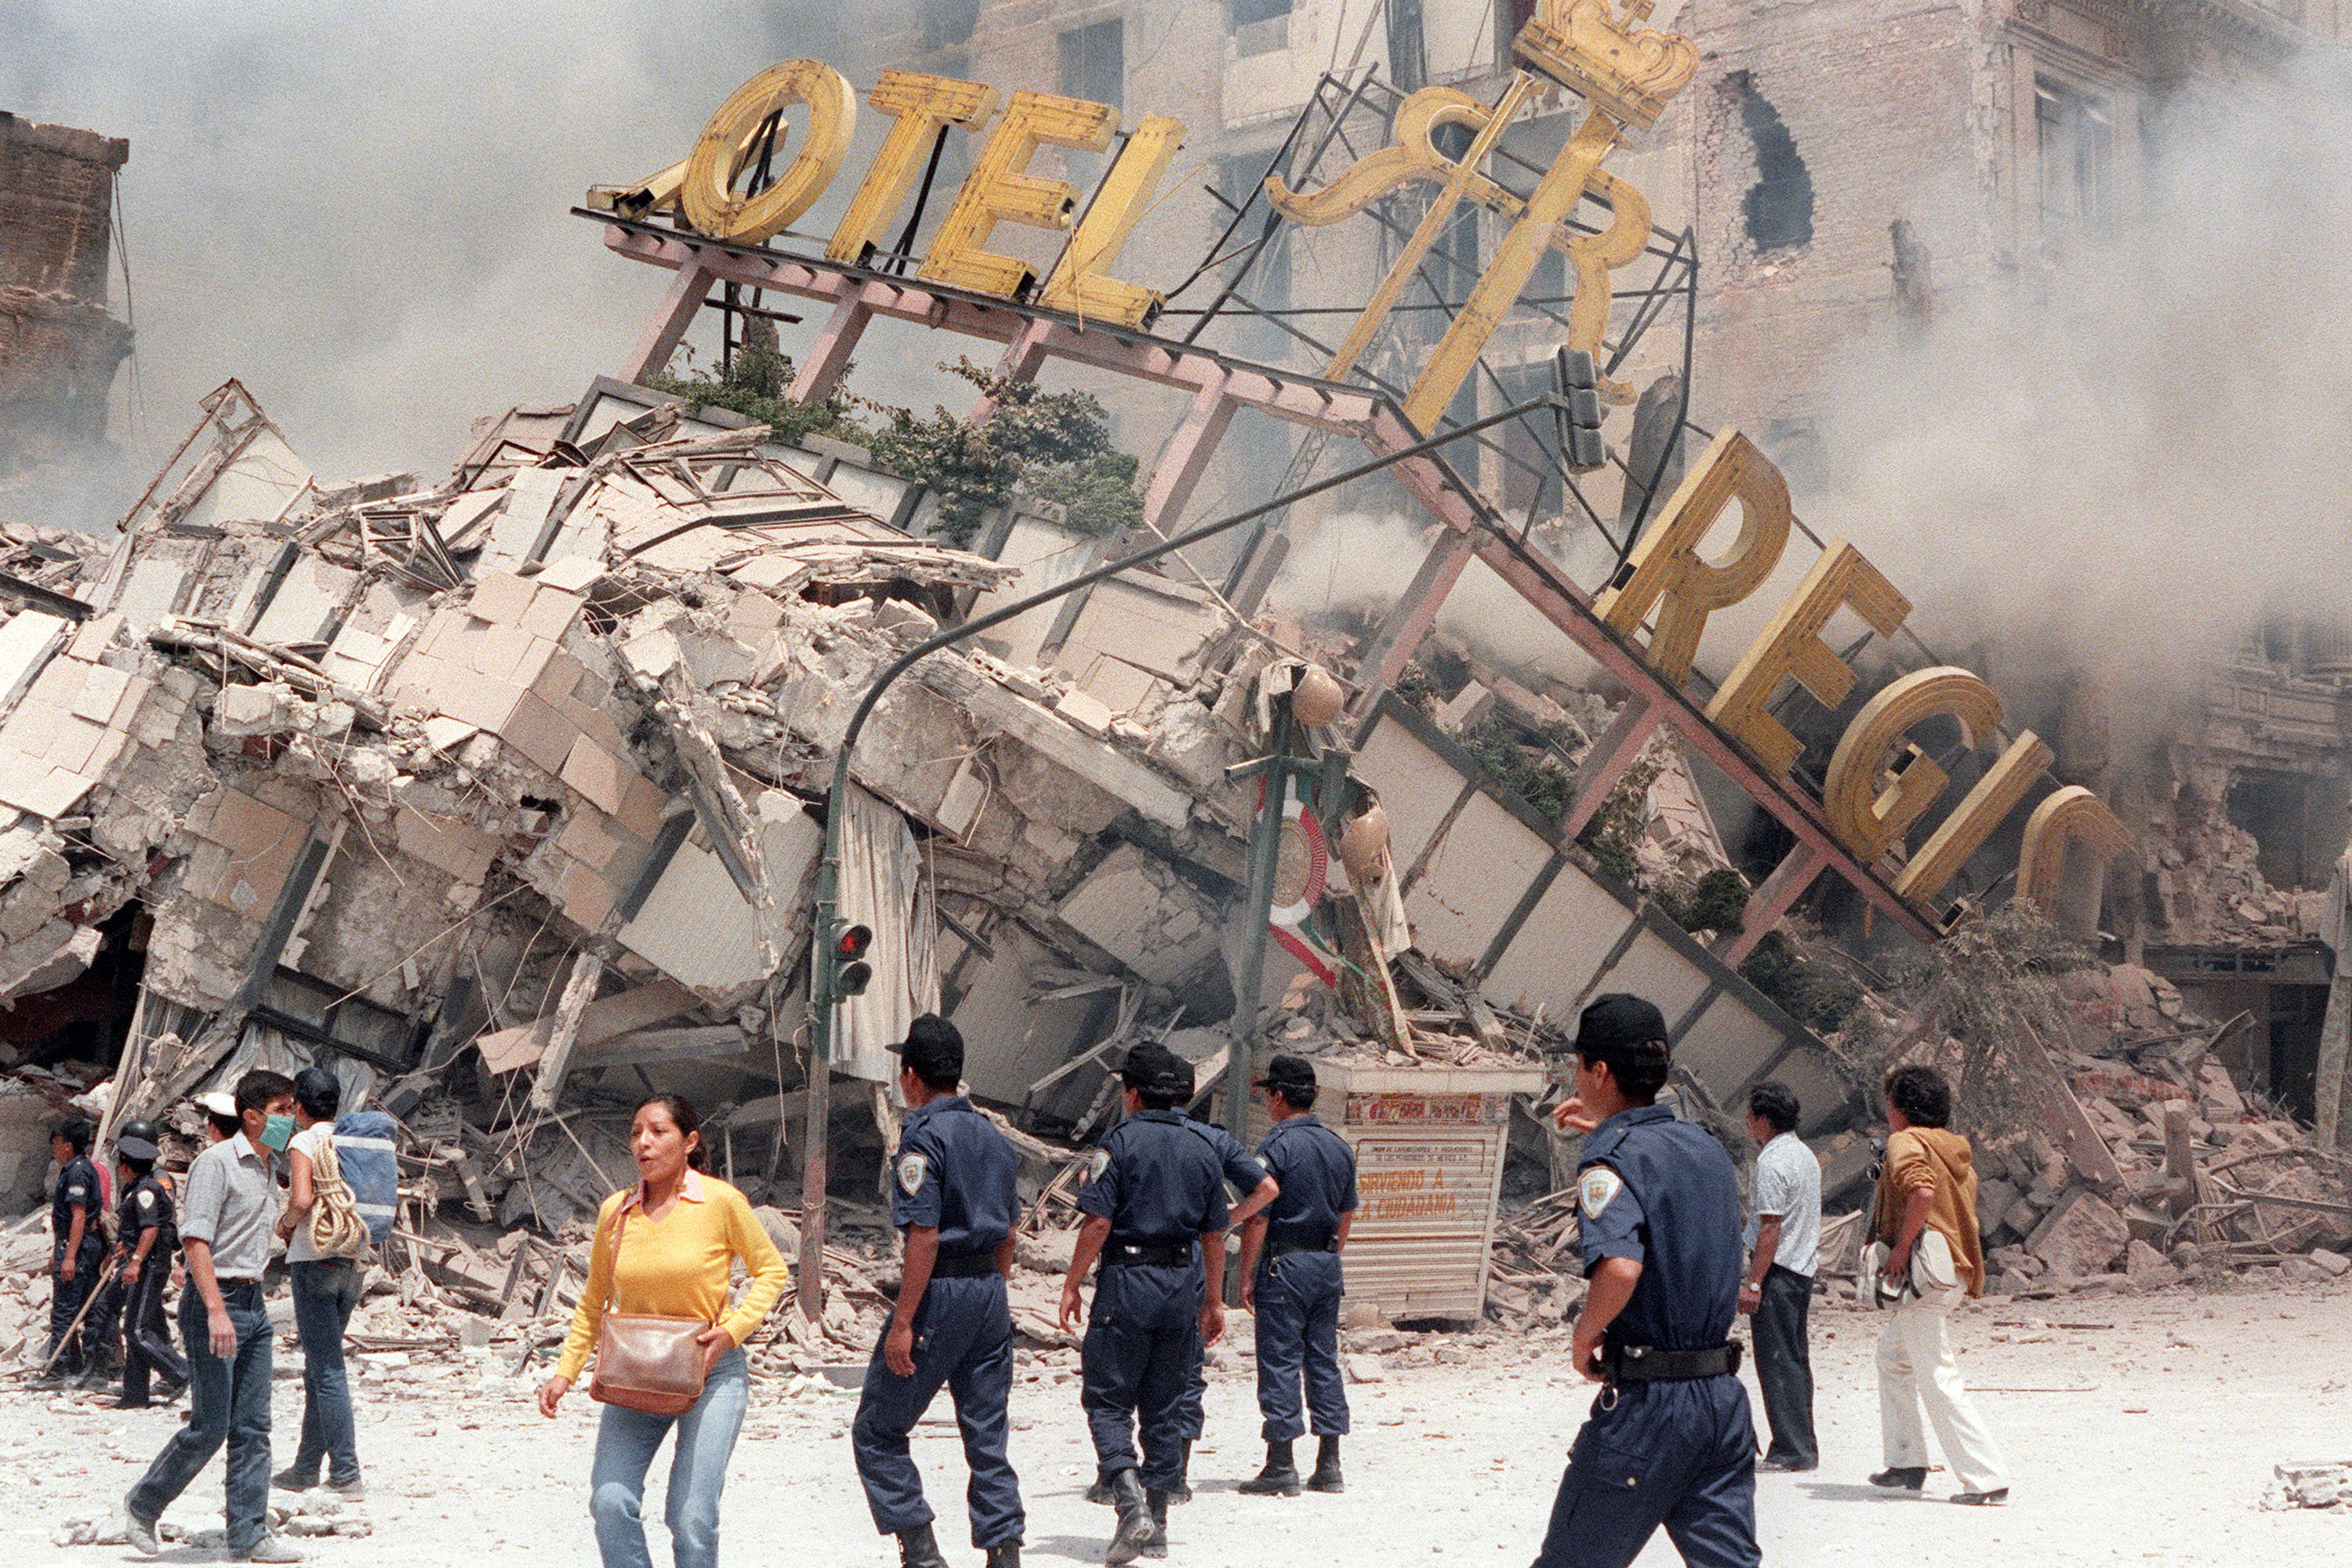 Escombros del Hotel Regis tras colapsar en el terremoto del 19 de septiembre de 1985 en Ciudad de México. | Foto: Getty Images